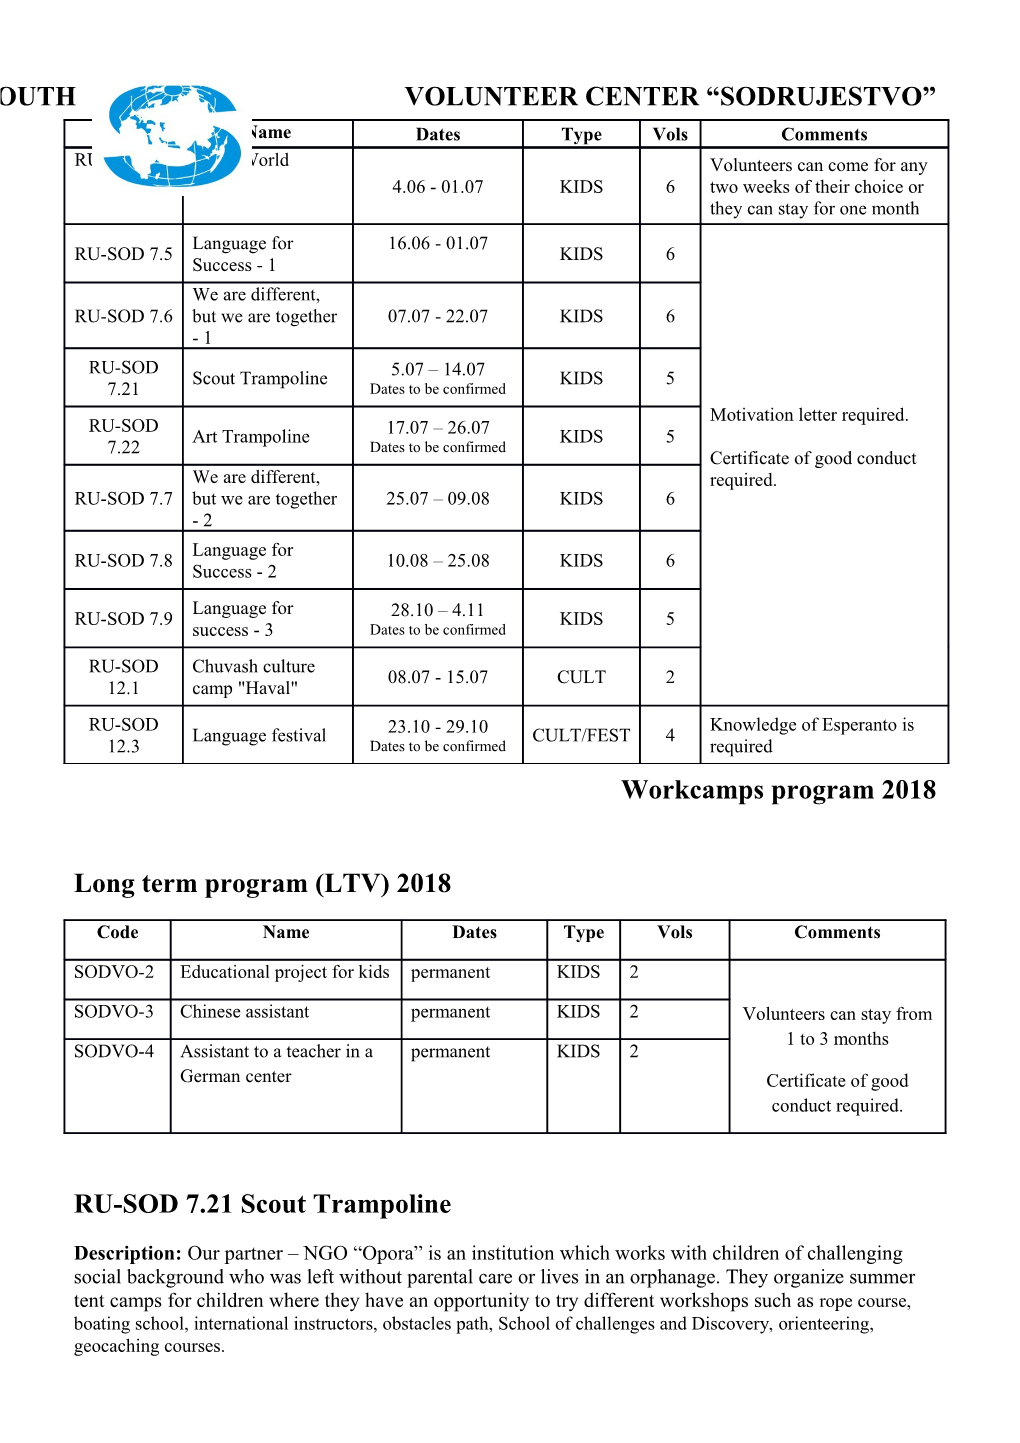 Long Term Program (LTV) 2018